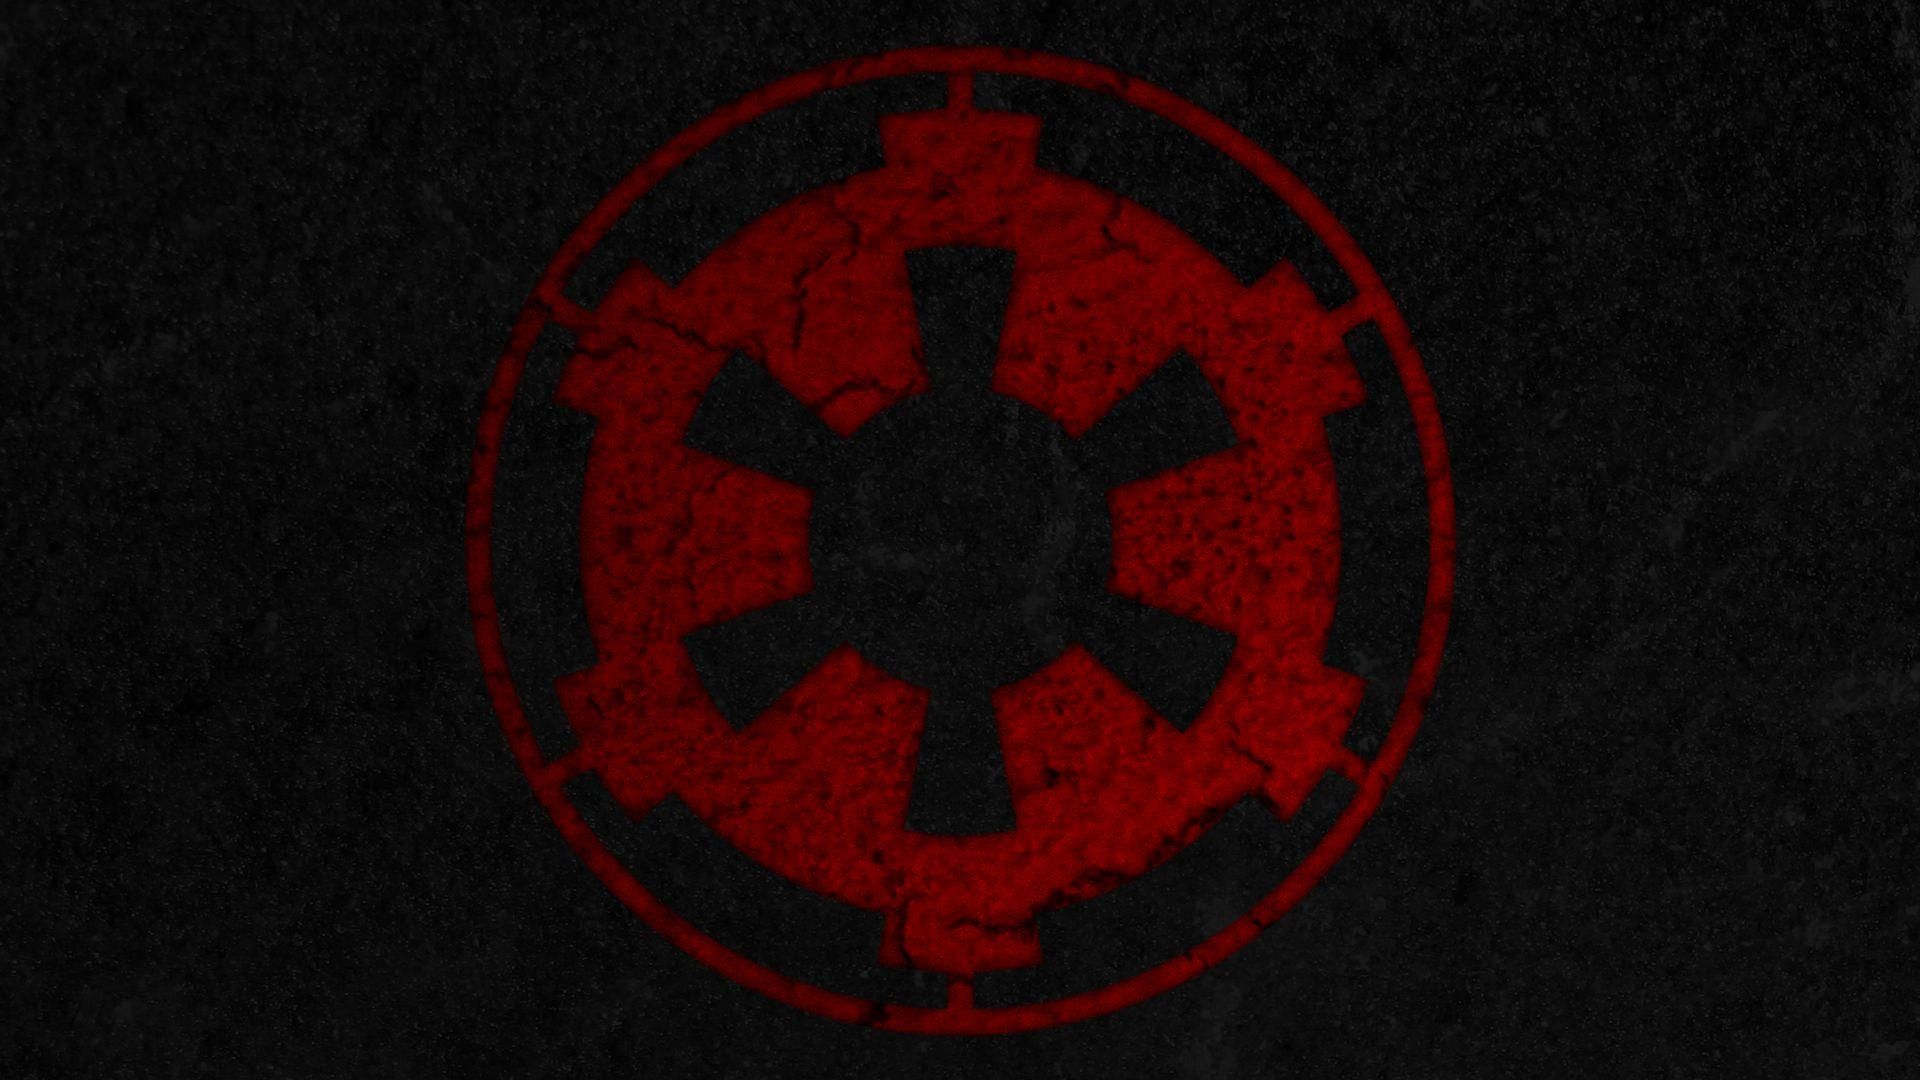 star wars empire logo wallpaper